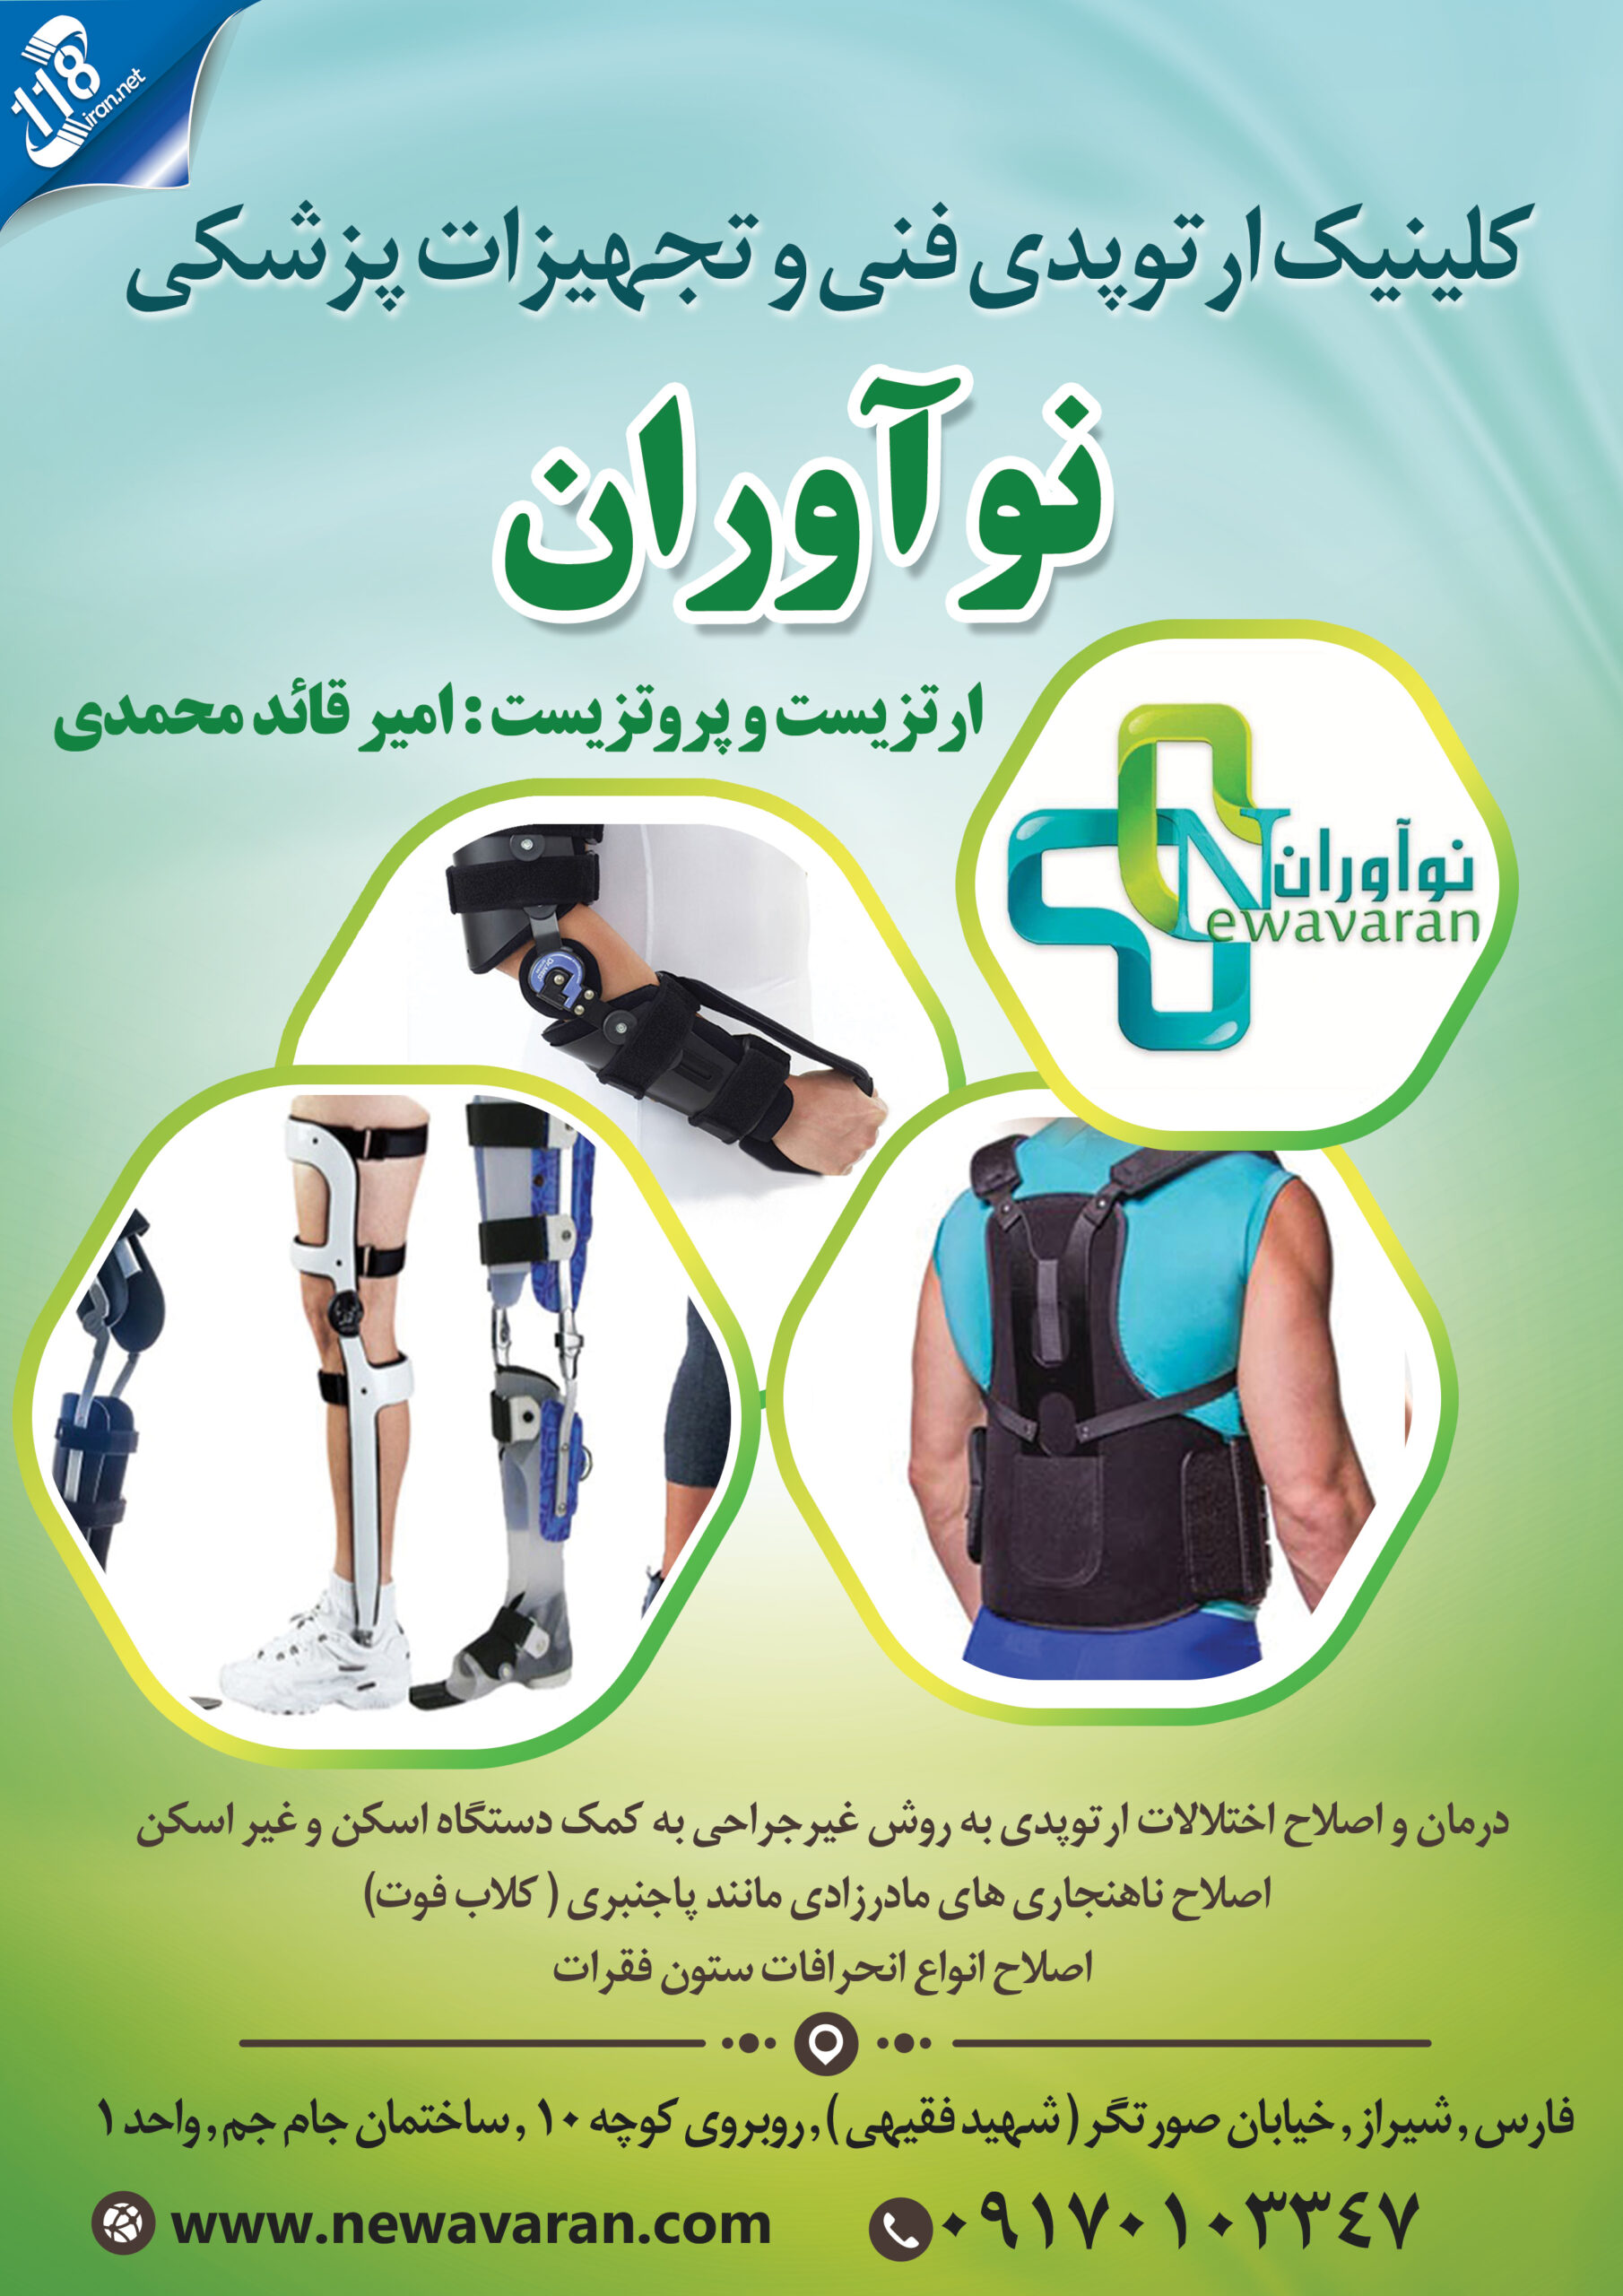  کلینیک ارتوپدی فنی و تجهیزات پزشکی نوآوران در شیراز 